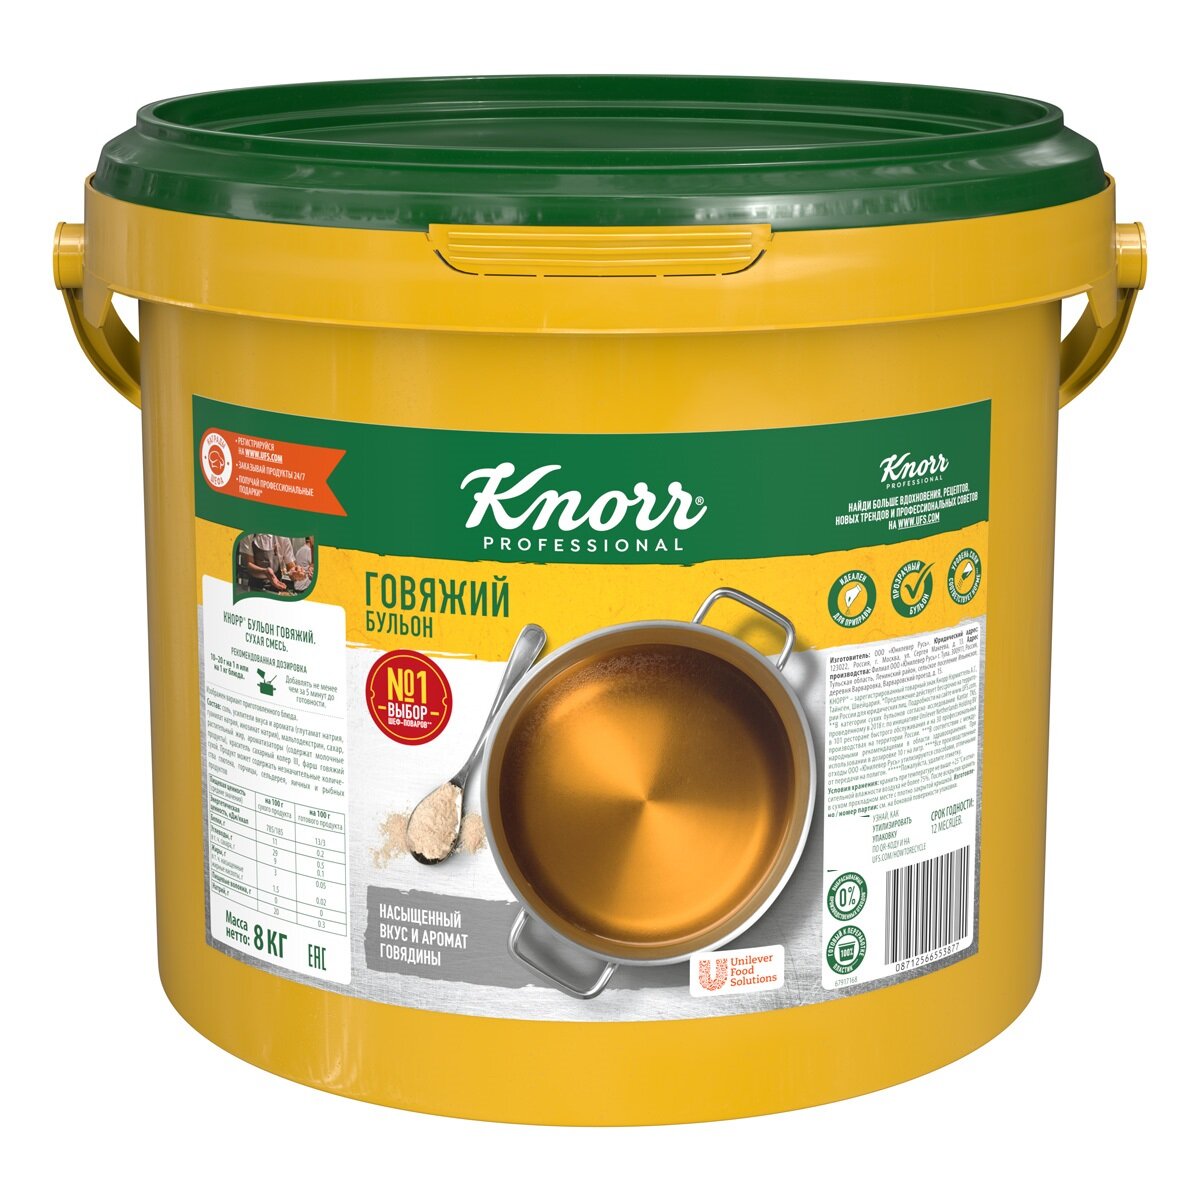 Бульон говяжий 8 кг Knorr сухая смесь, 1 шт